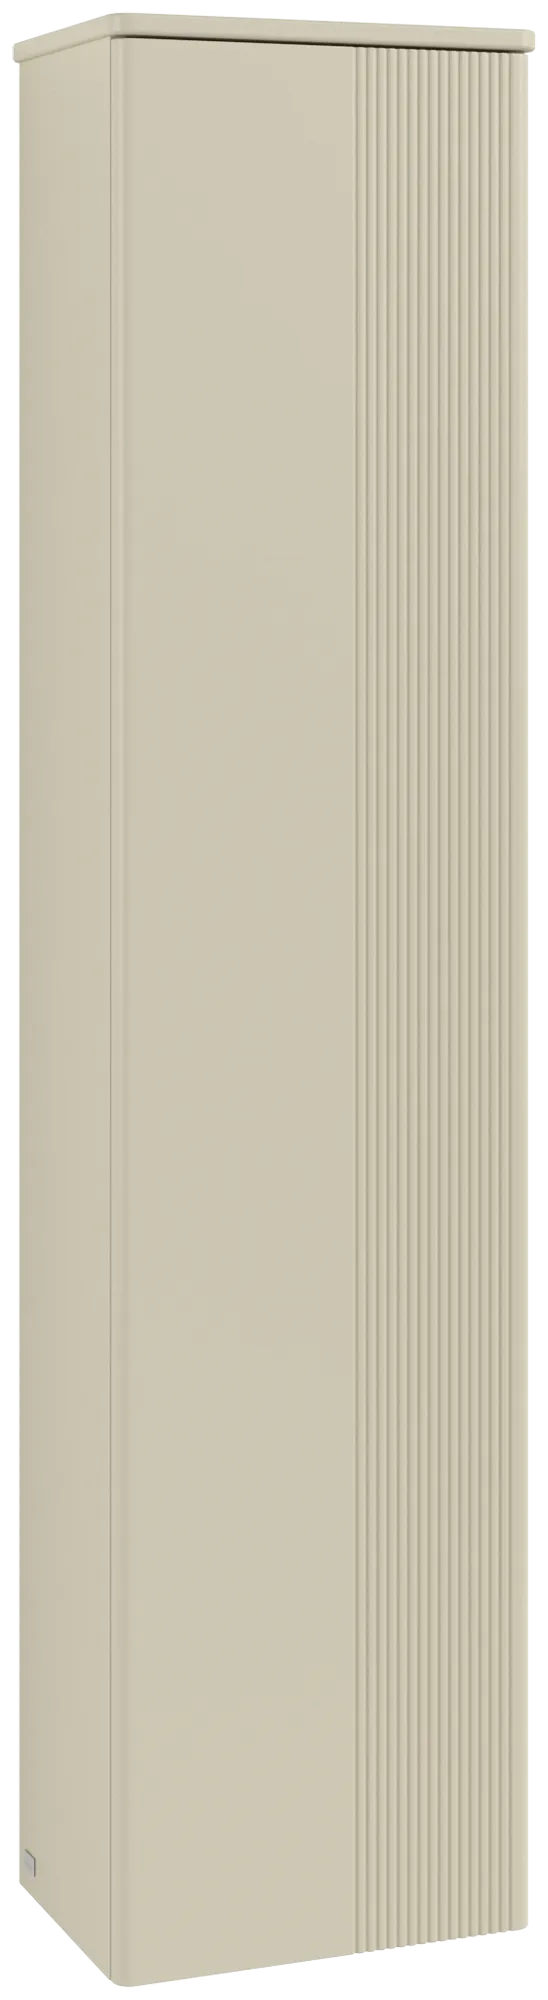 Bild von VILLEROY BOCH Antao Hochschrank, 1 Tür, 414 x 1719 x 287 mm, Front mit Struktur, Silk Grey Matt Lacquer / Silk Grey Matt Lacquer #K45100HJ